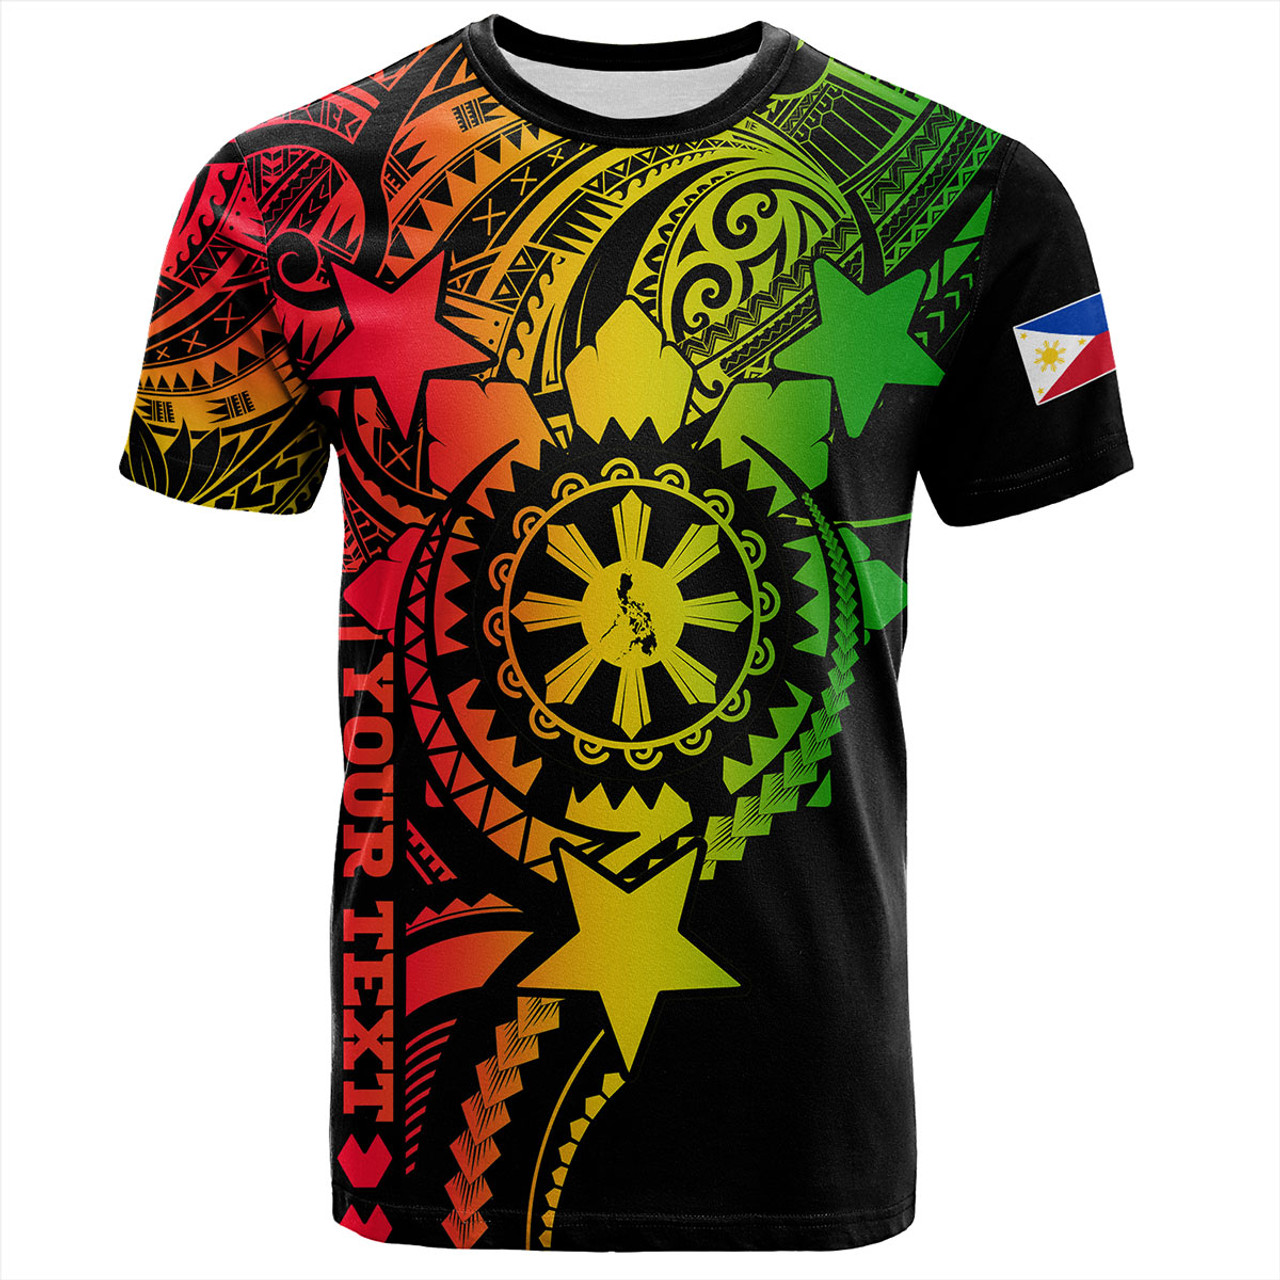 Philippines Filipinos T-Shirt - Proud To Be Filipino Tribal Sun Batok Reggae Style